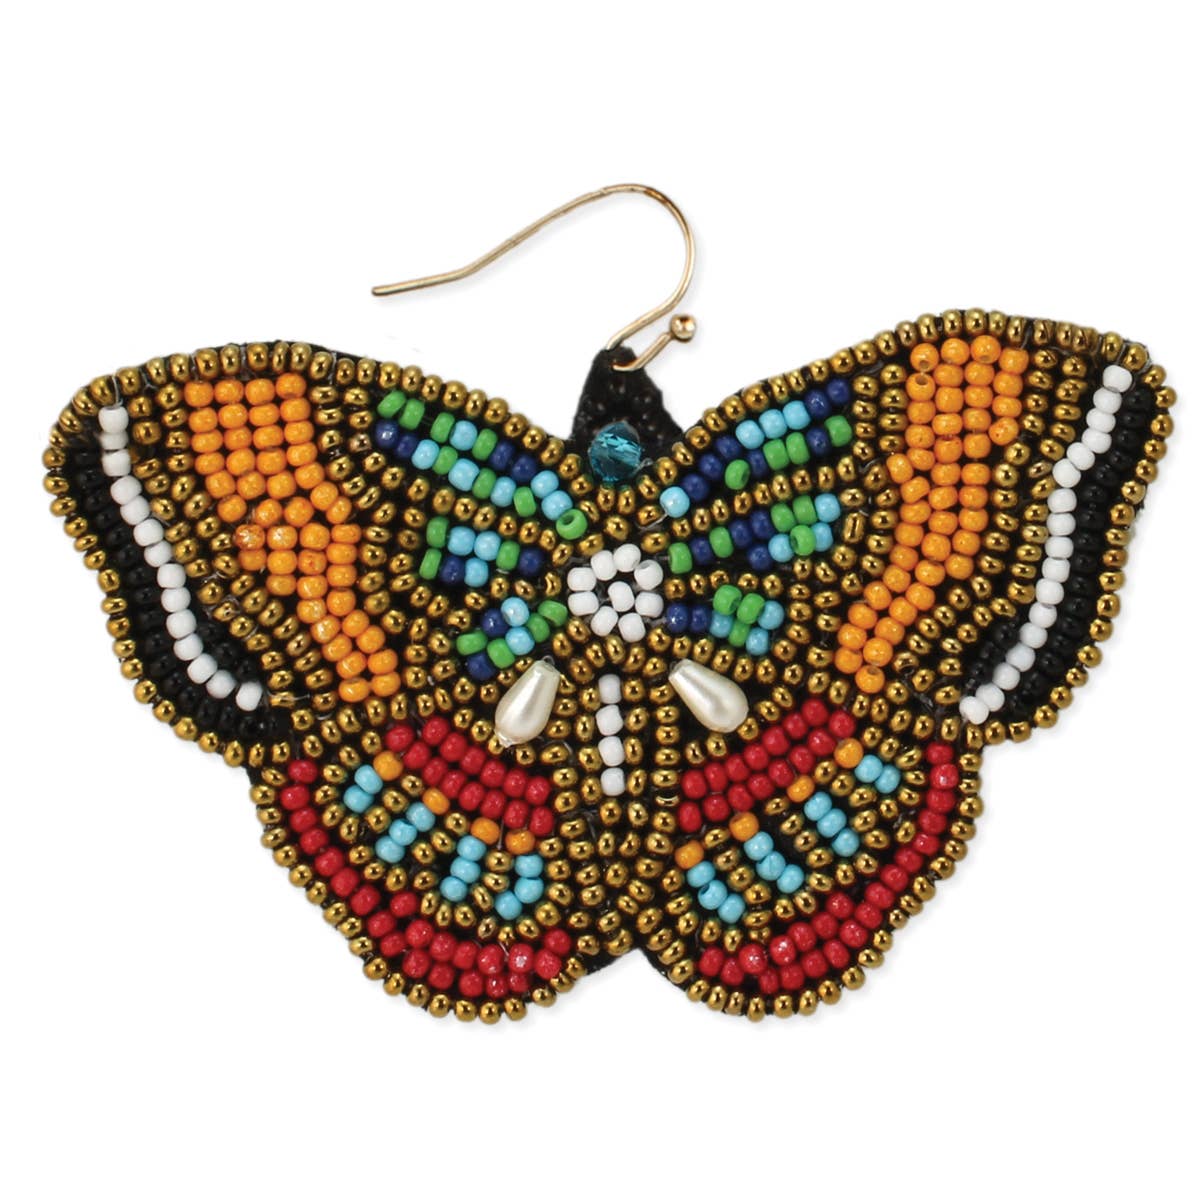 Summer Wings Butterfly Beaded Earrings